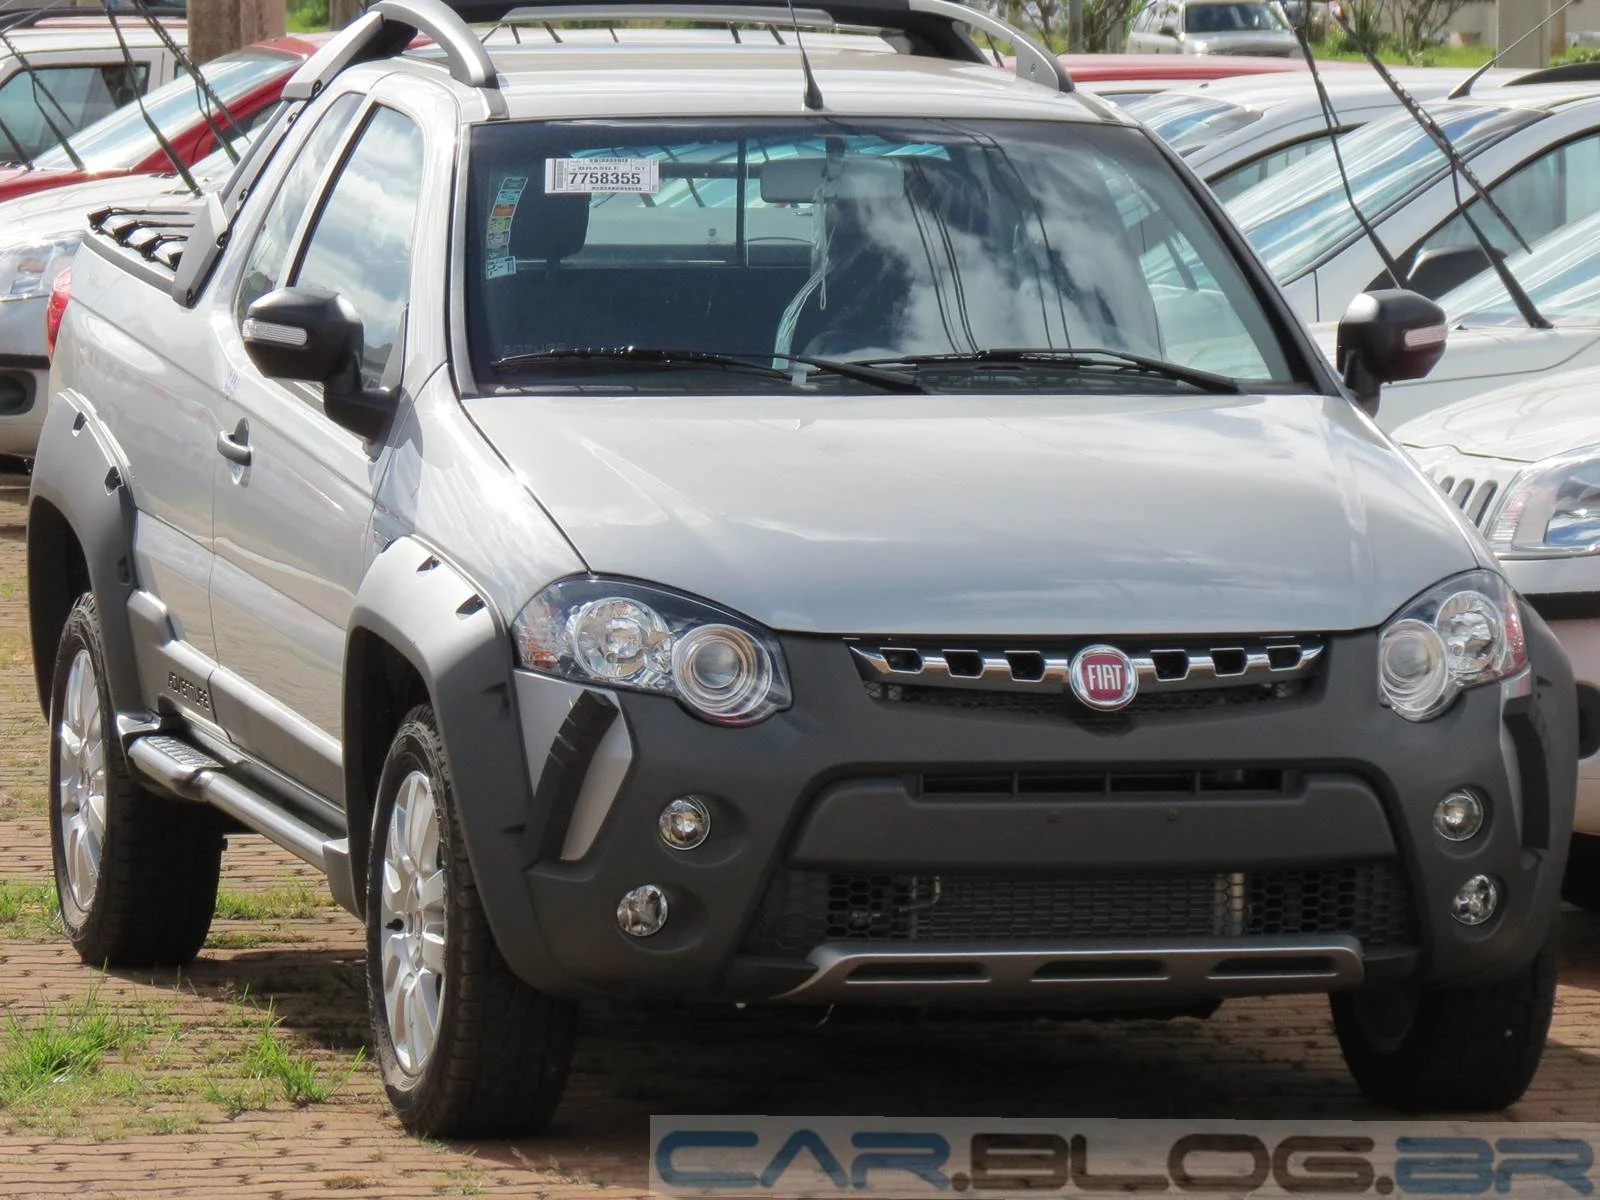 Fiat Strada - comercial leve mais vendido do Brasil em 2014